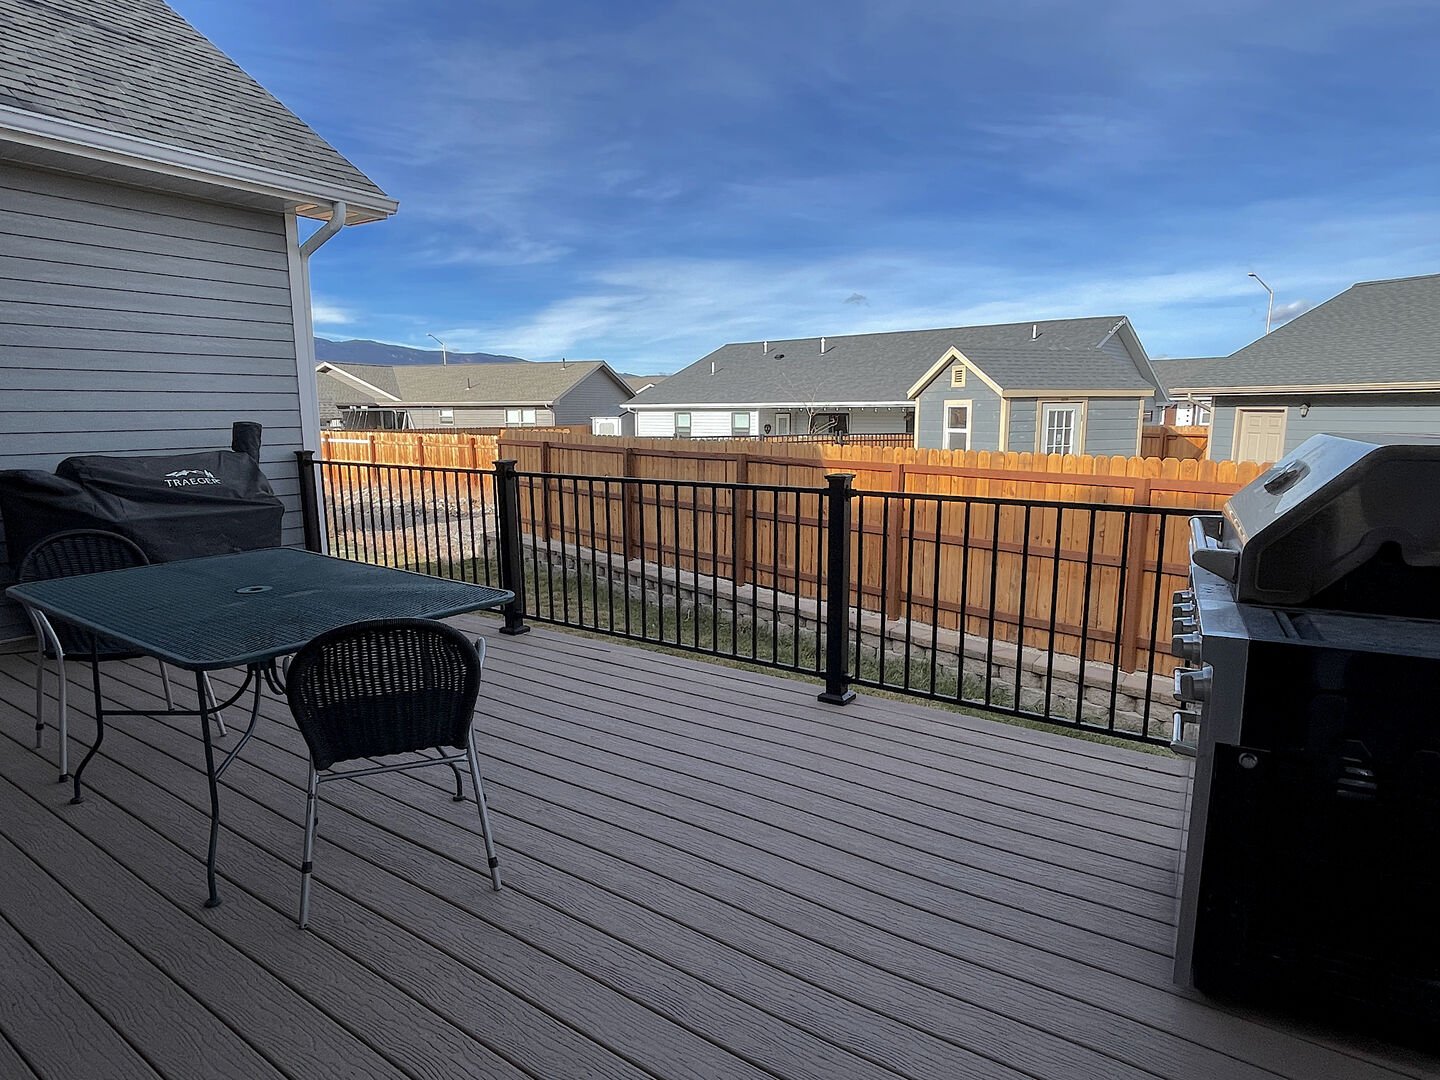 Nice outdoor deck area